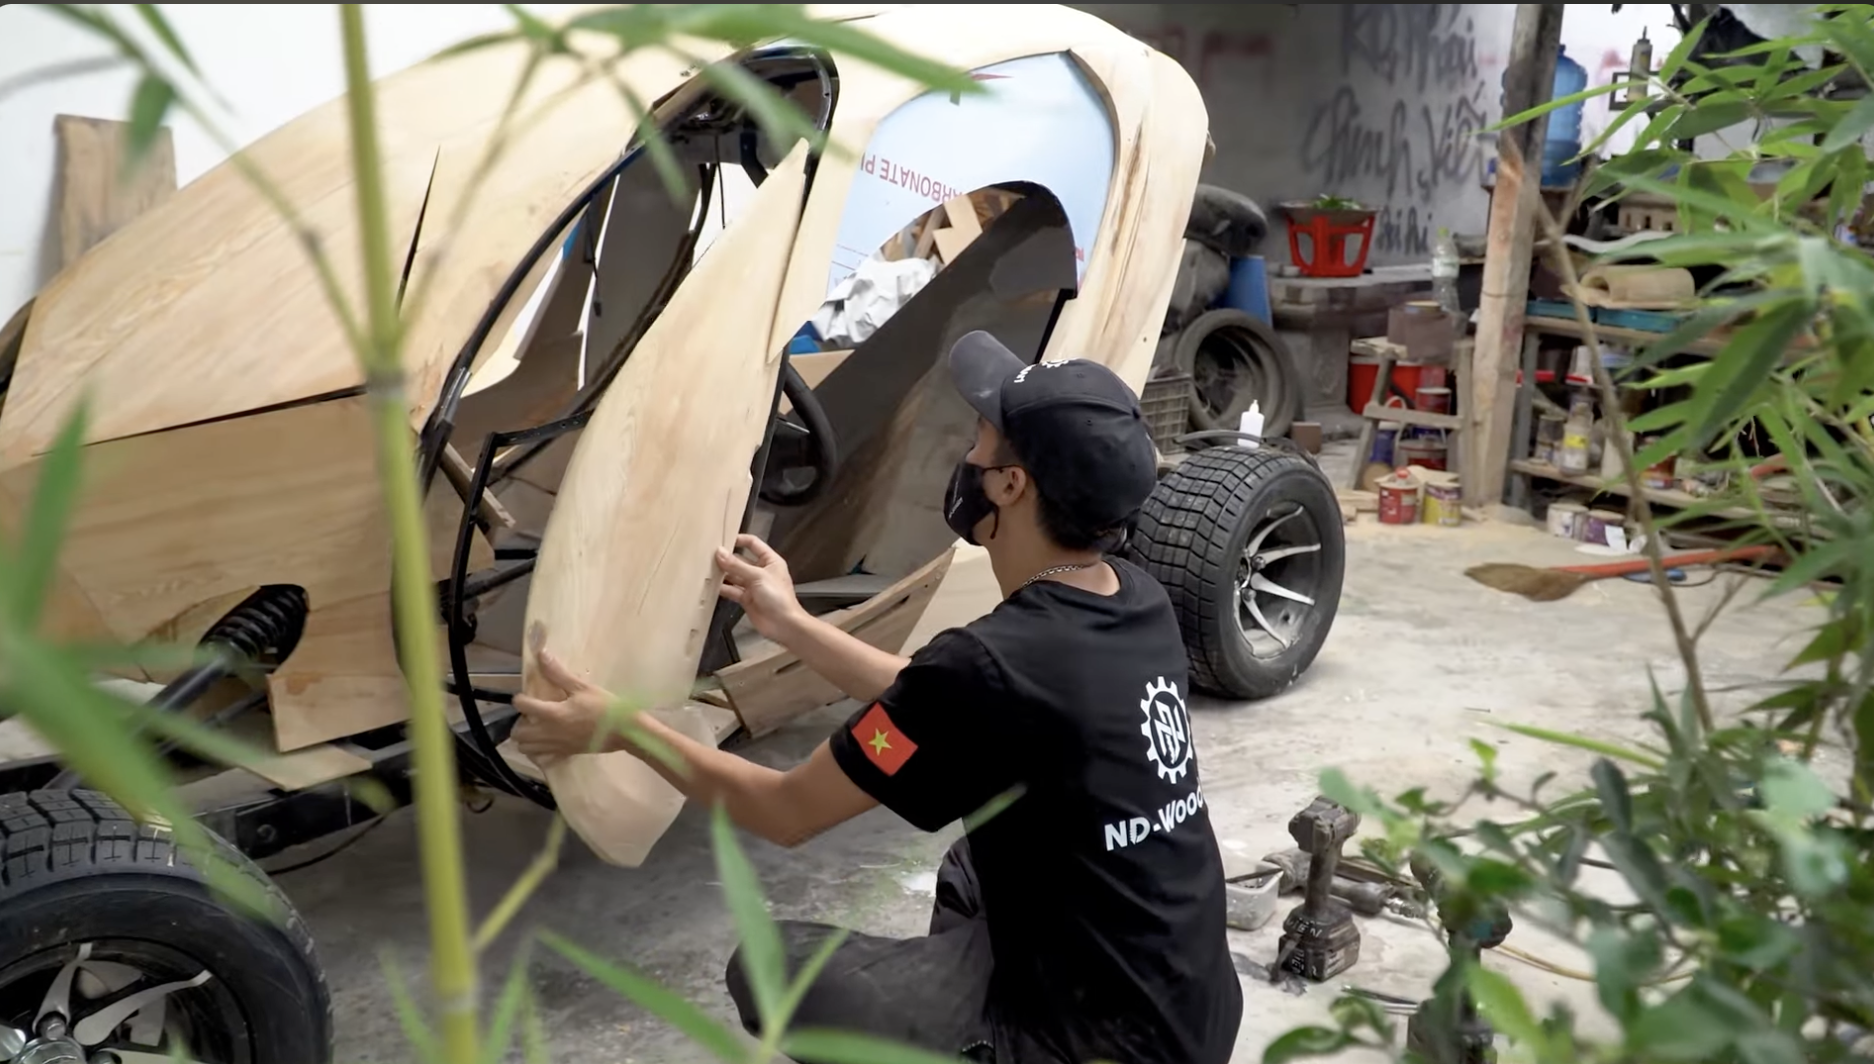 Thợ Việt chế xe gỗ phong cách ngoài hành tinh: Khung tự làm từ A đến Z, cửa mở kiểu Pagani Huayra, chạy như xe địa hình - Ảnh 7.